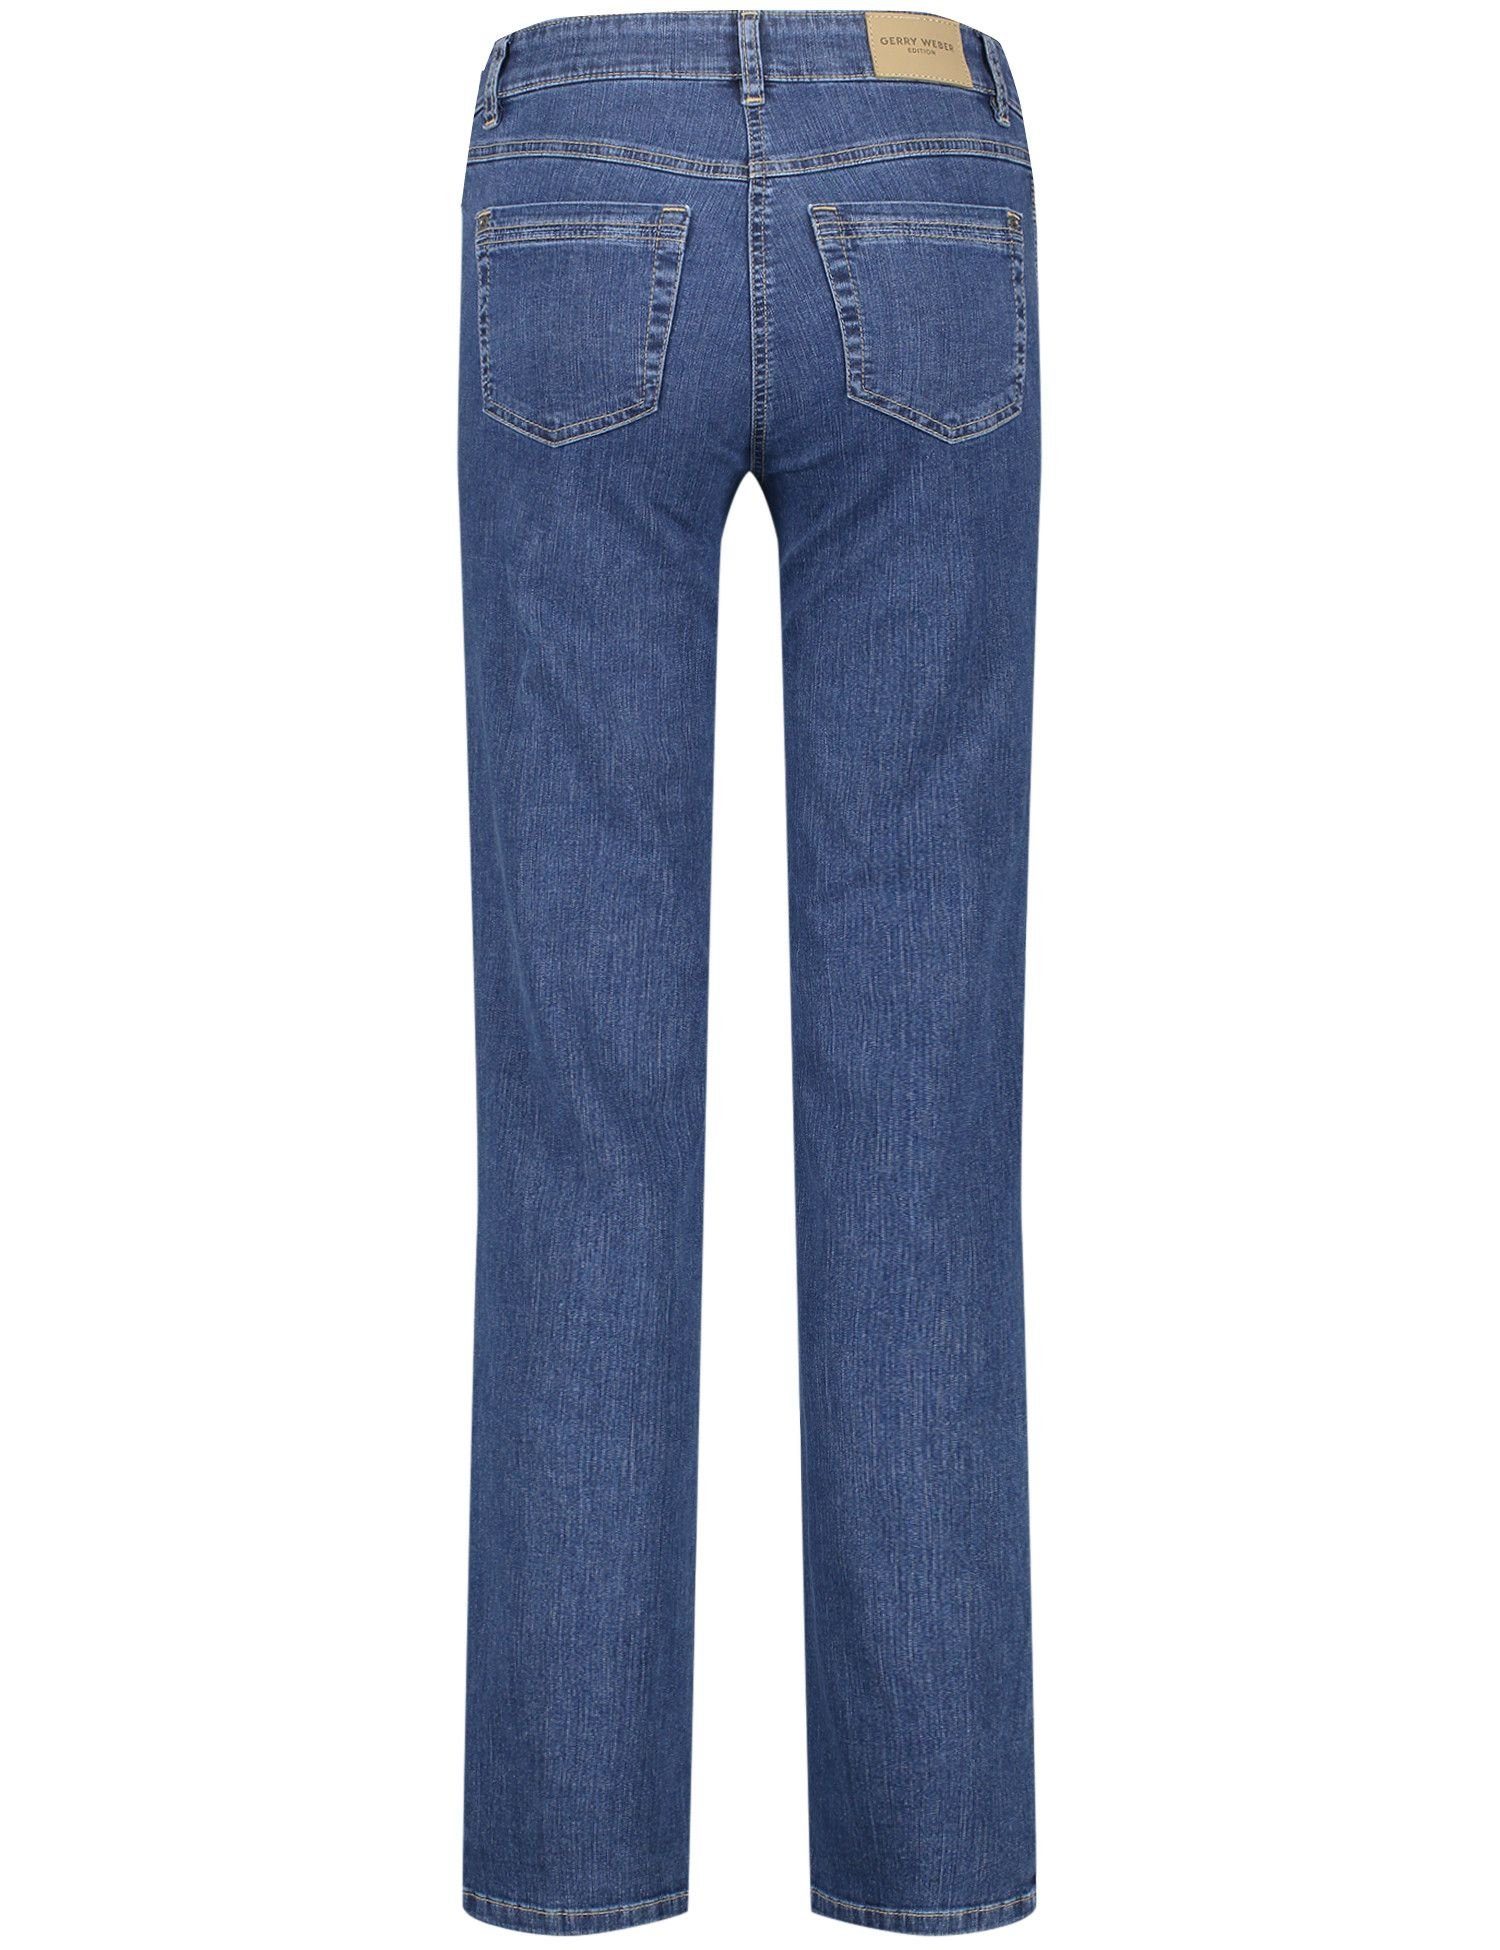 5-Pocket-Jeans GERRY BLUE DENIM WEBER 87300